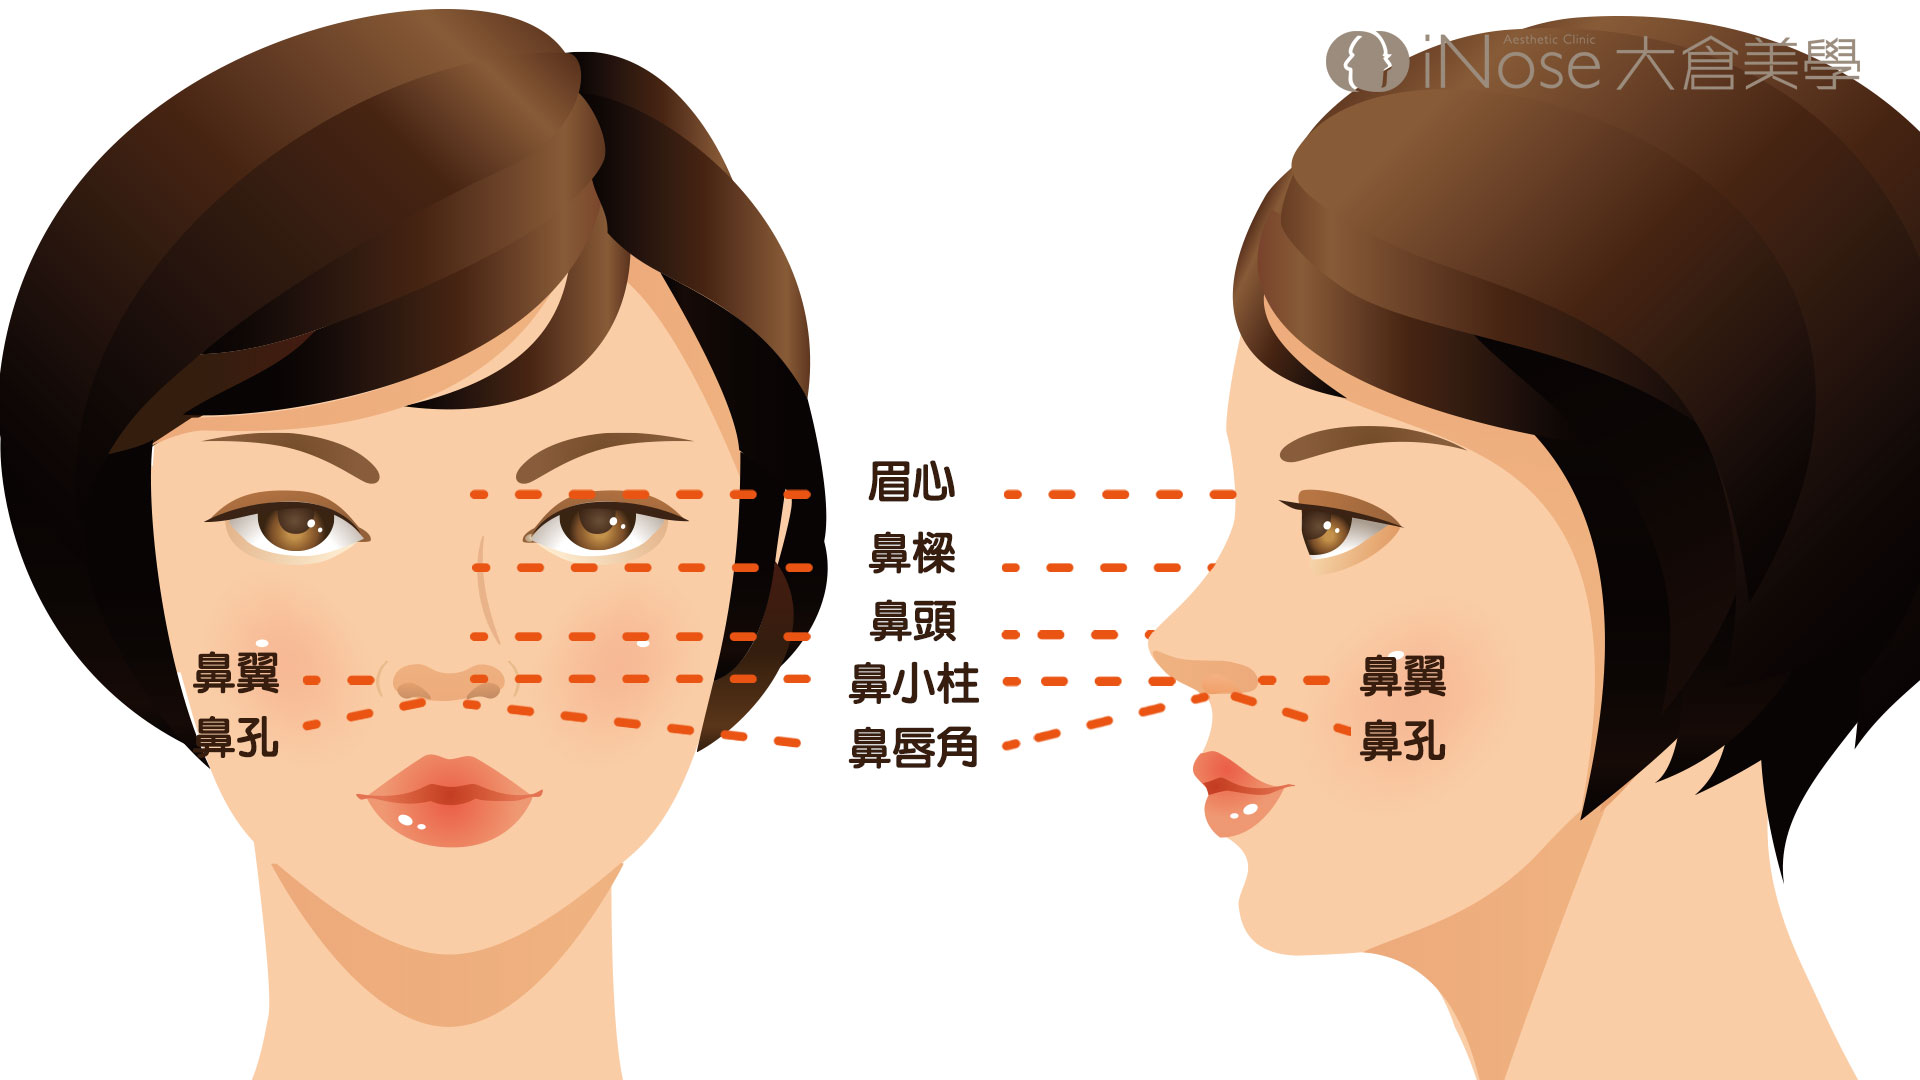 7段結構式隆鼻 全臉自體脂肪補脂 隆鼻費用 隆鼻後遺症 自體脂肪補臉 七段式插圖